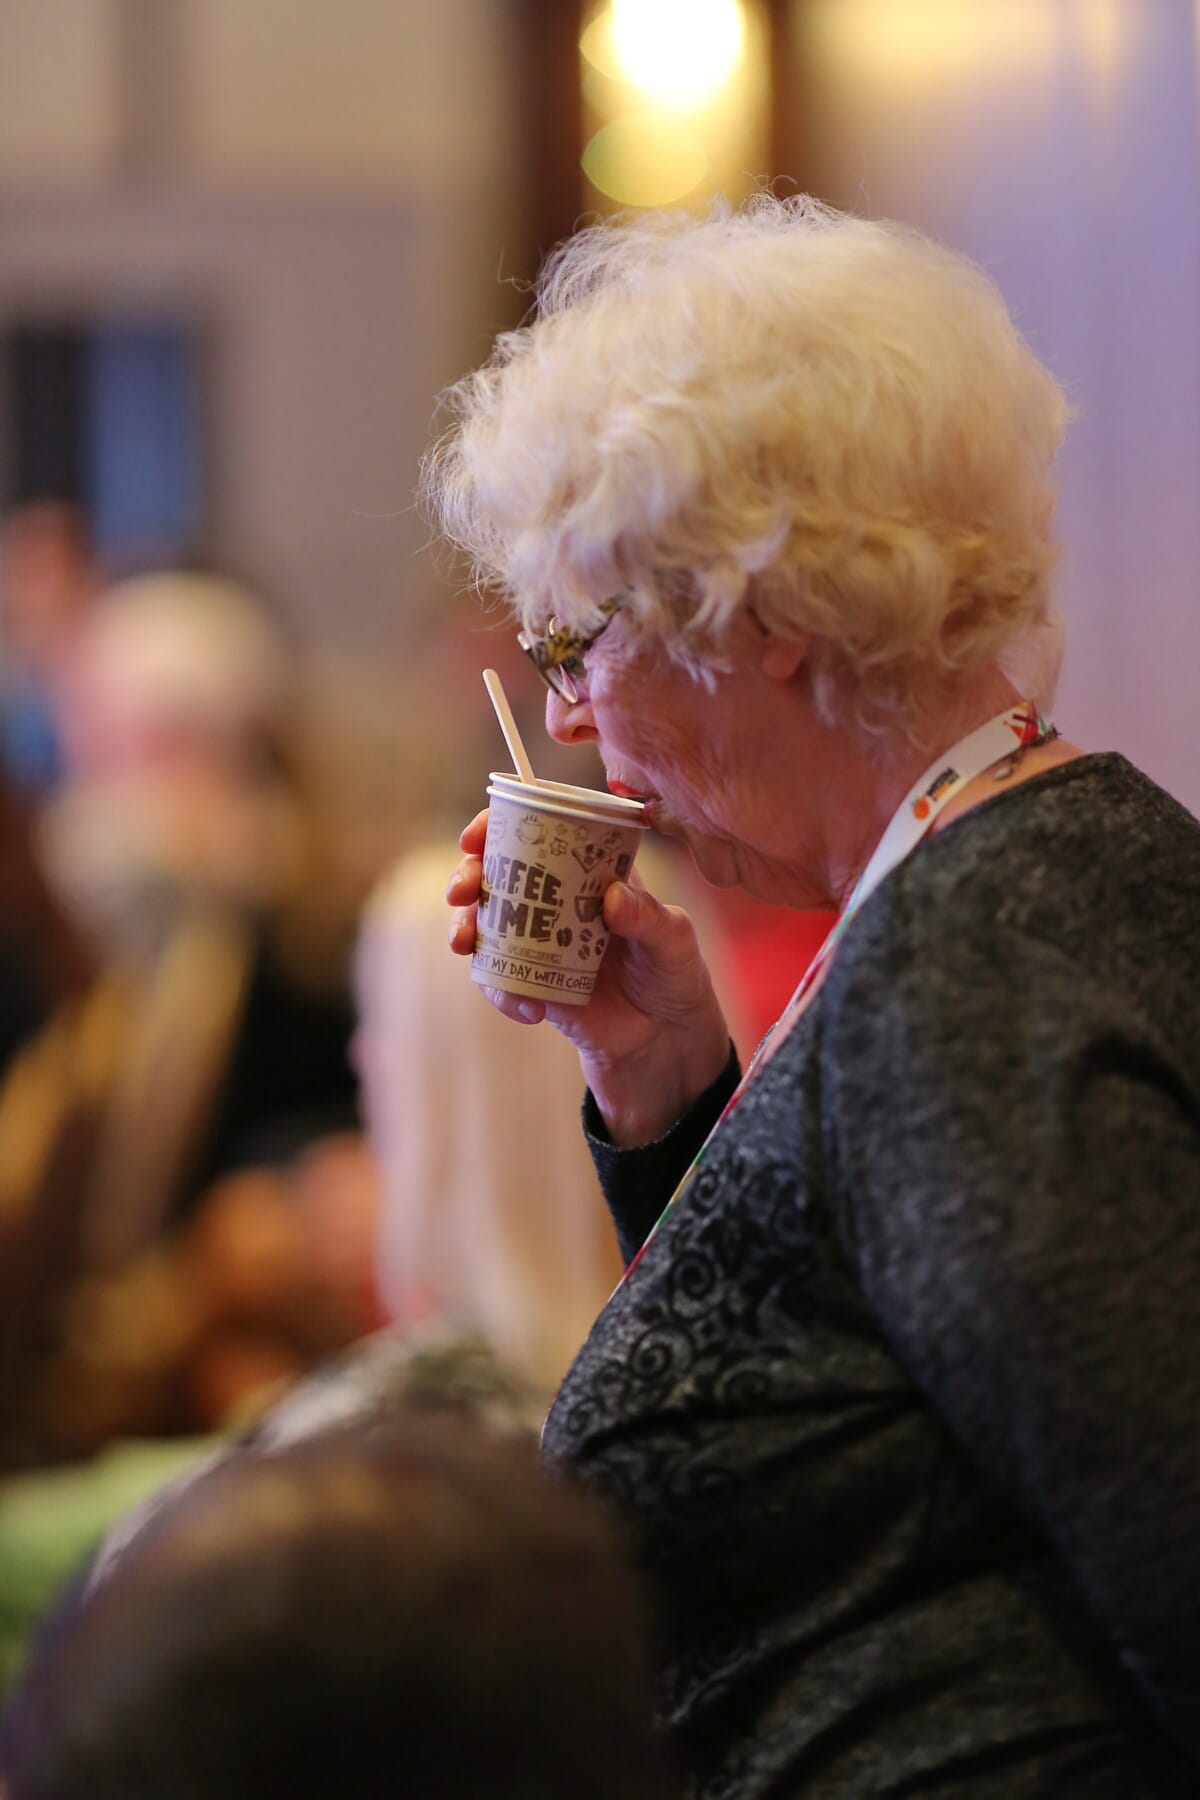 ηλικιωμένη γυναίκα, γιαγιαδες, πόσιμο, φλιτζάνι καφέ, καφέ, άτομα, γυναίκα, πορτρέτο, ποτό, σε εσωτερικούς χώρους